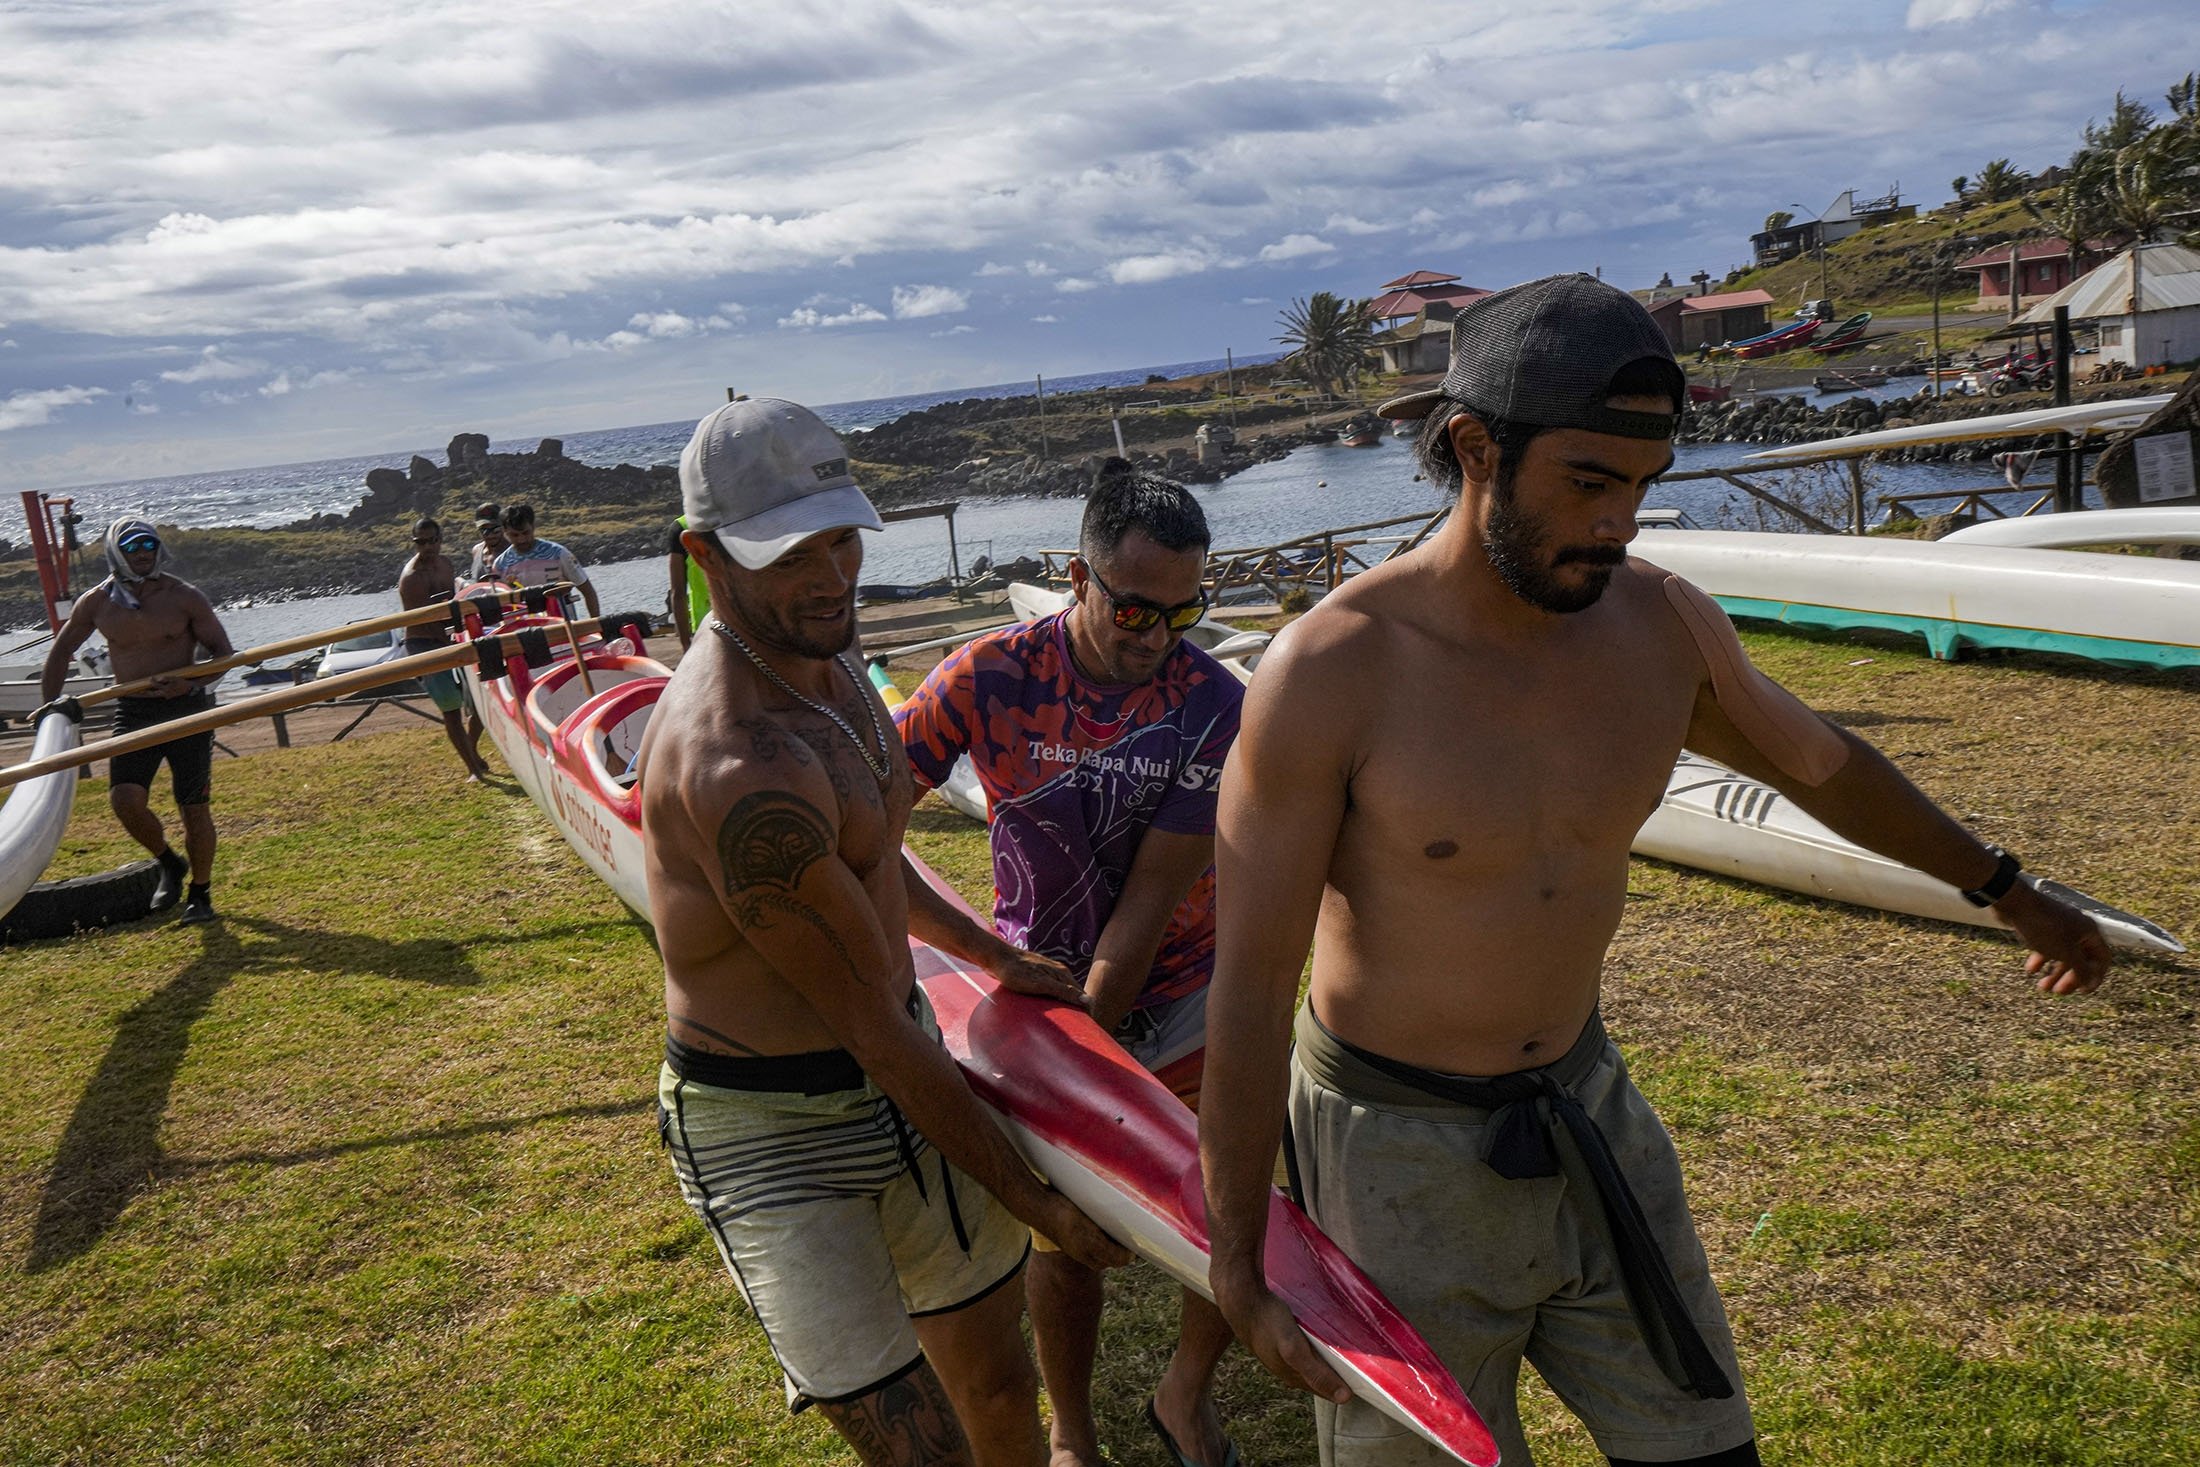 Anggota kru Rapanuis membawa kano mereka selama sesi pelatihan untuk tantangan Hoki Mai, di Rapa Nui, wilayah yang merupakan bagian dari Chili dan lebih dikenal sebagai Pulau Paskah, 24 November 2022. (Foto AP)